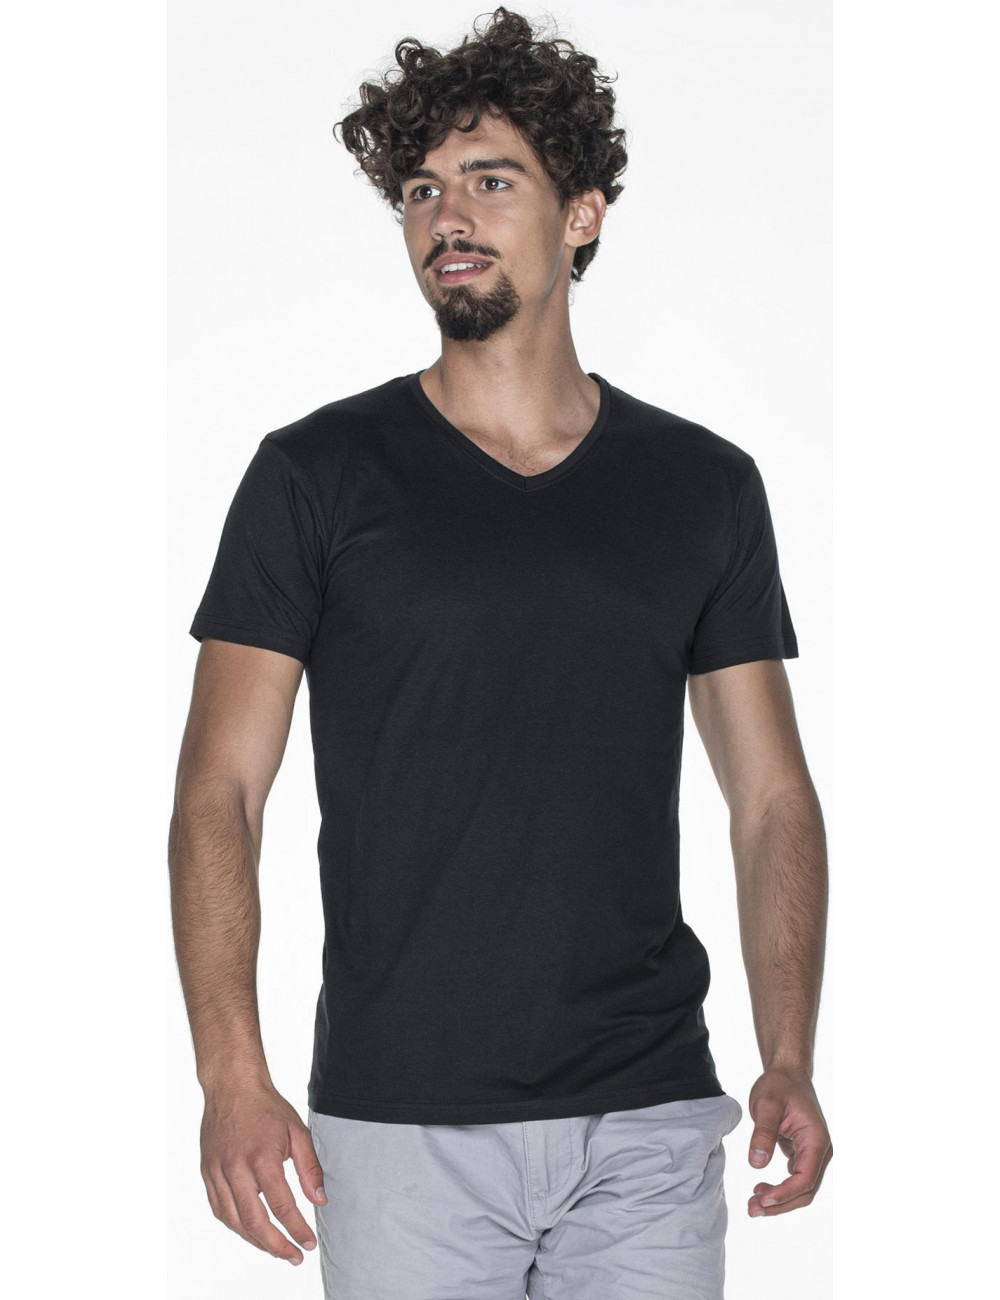 V-neck koszulka męska czarny Promostars